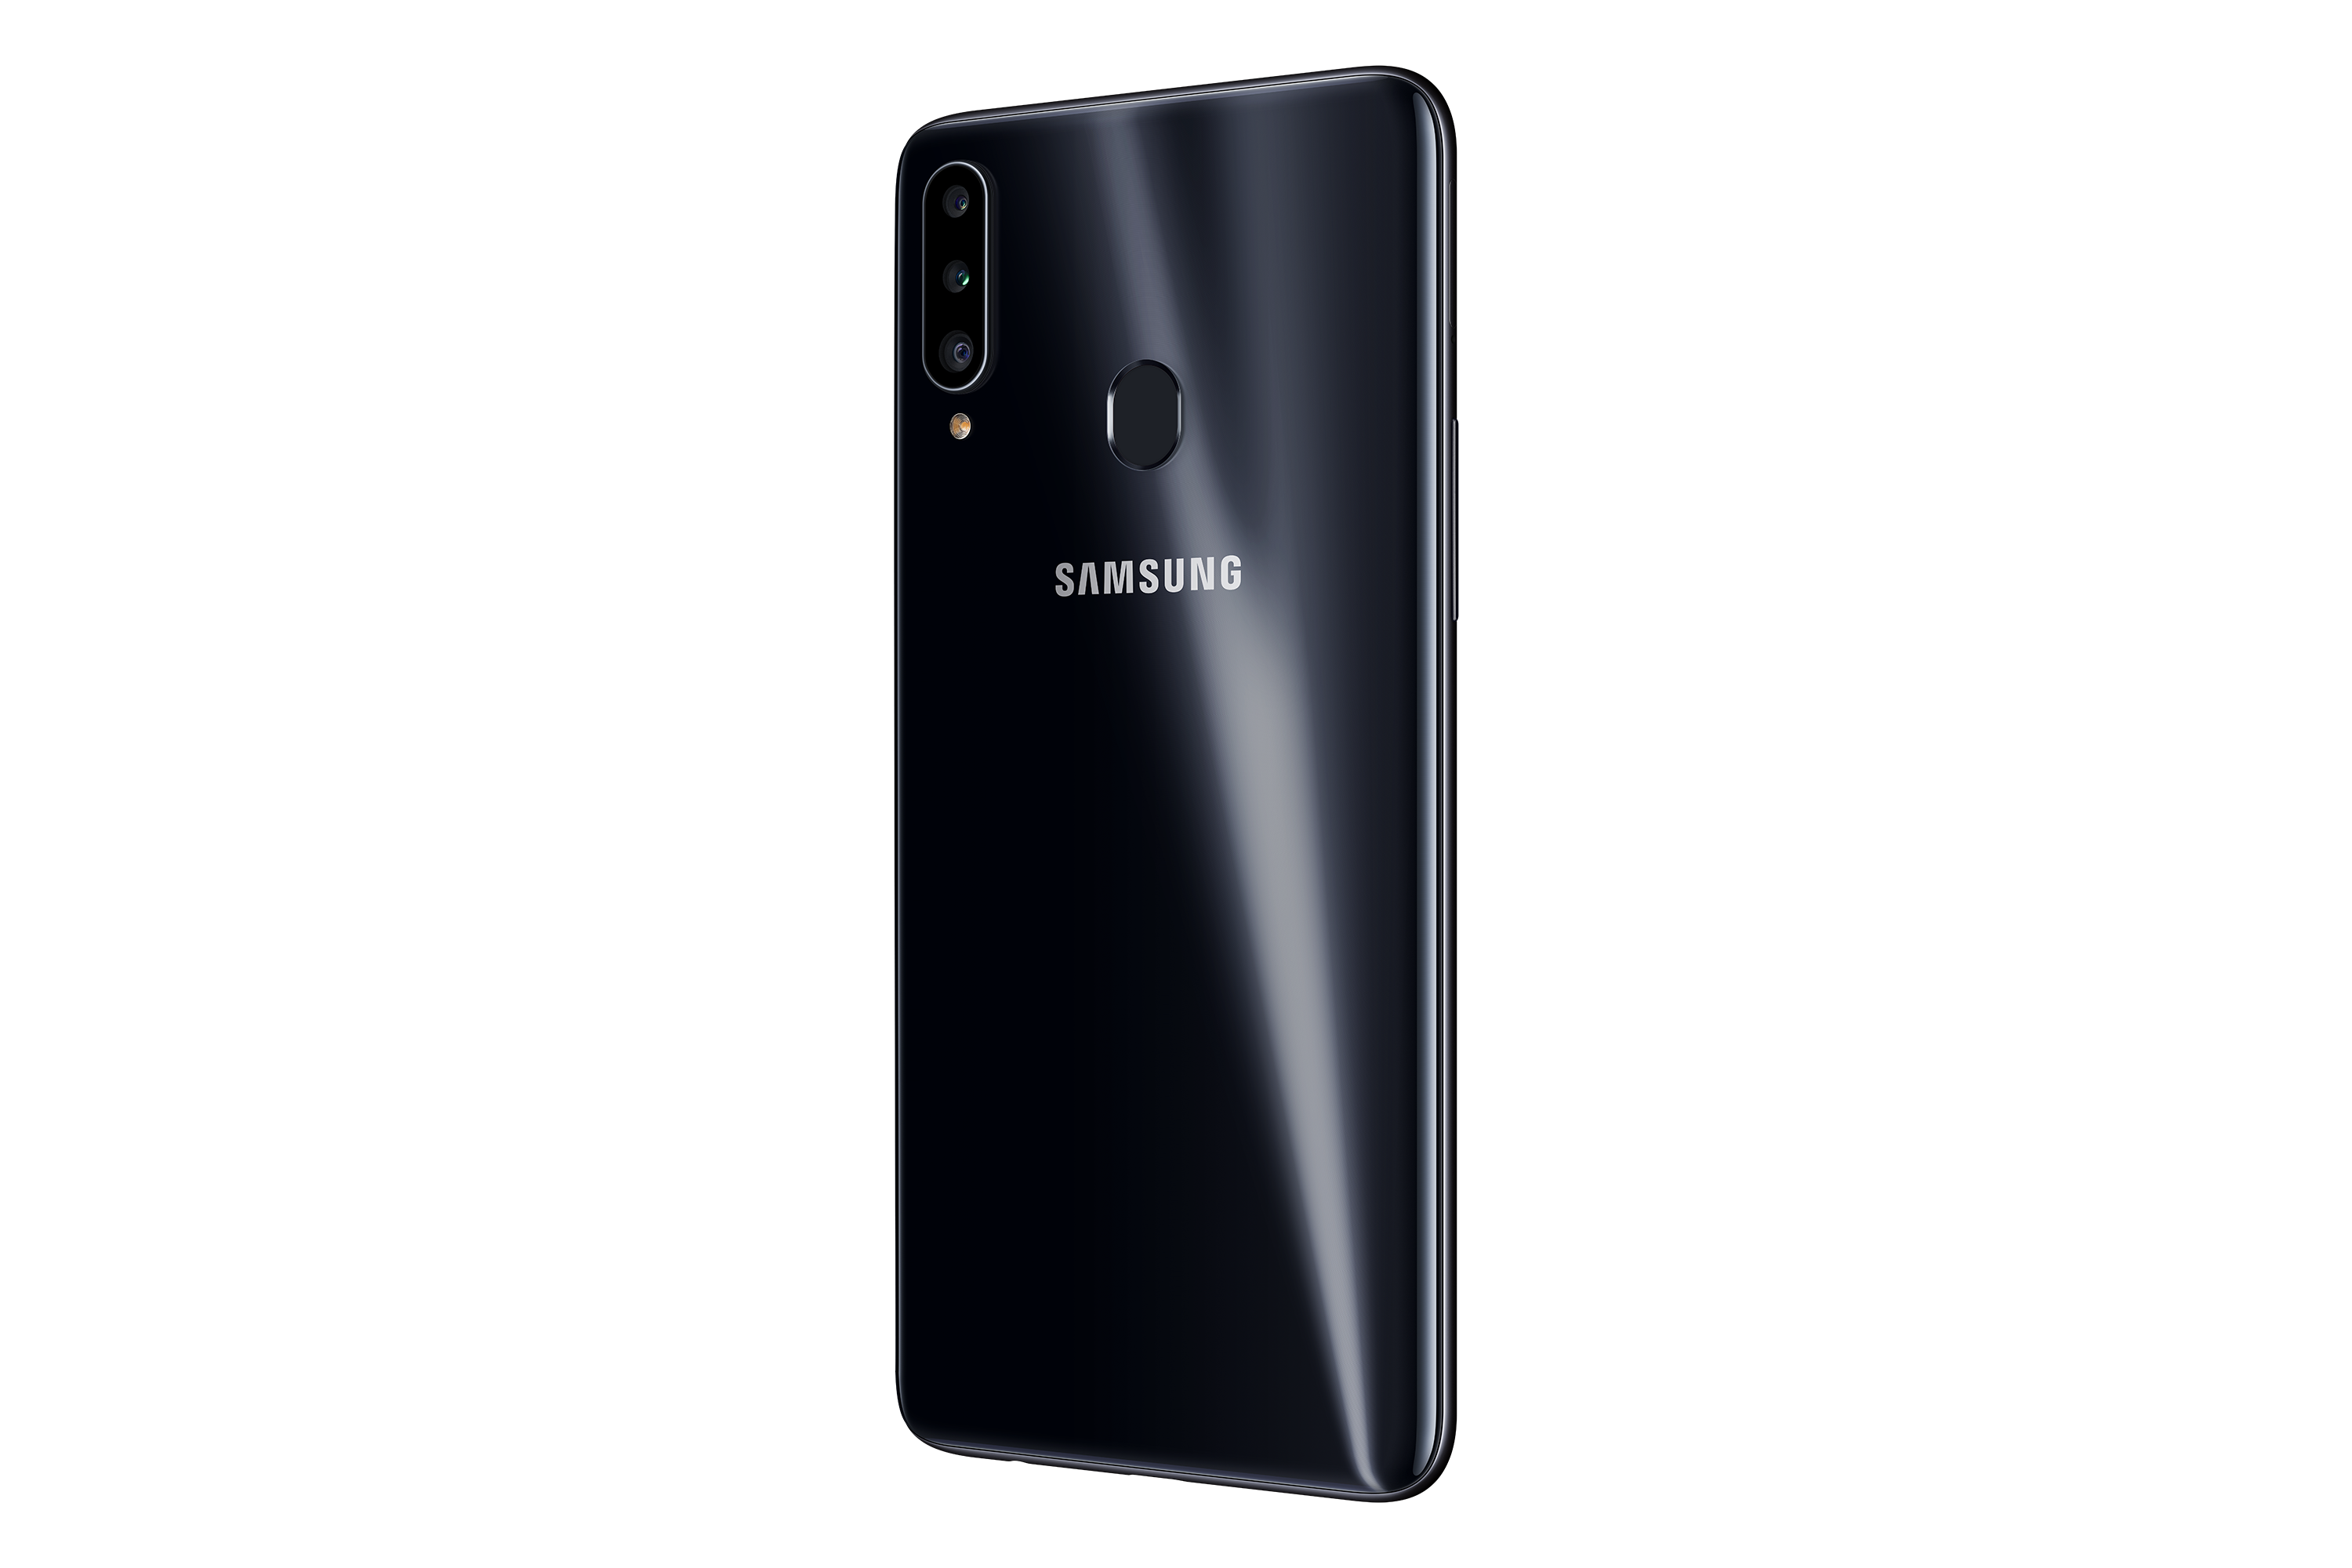 Samsung giới thiệu Galaxy A20s tại Việt Nam: 3 camera, sạc nhanh, giá từ 4,390,000 VND